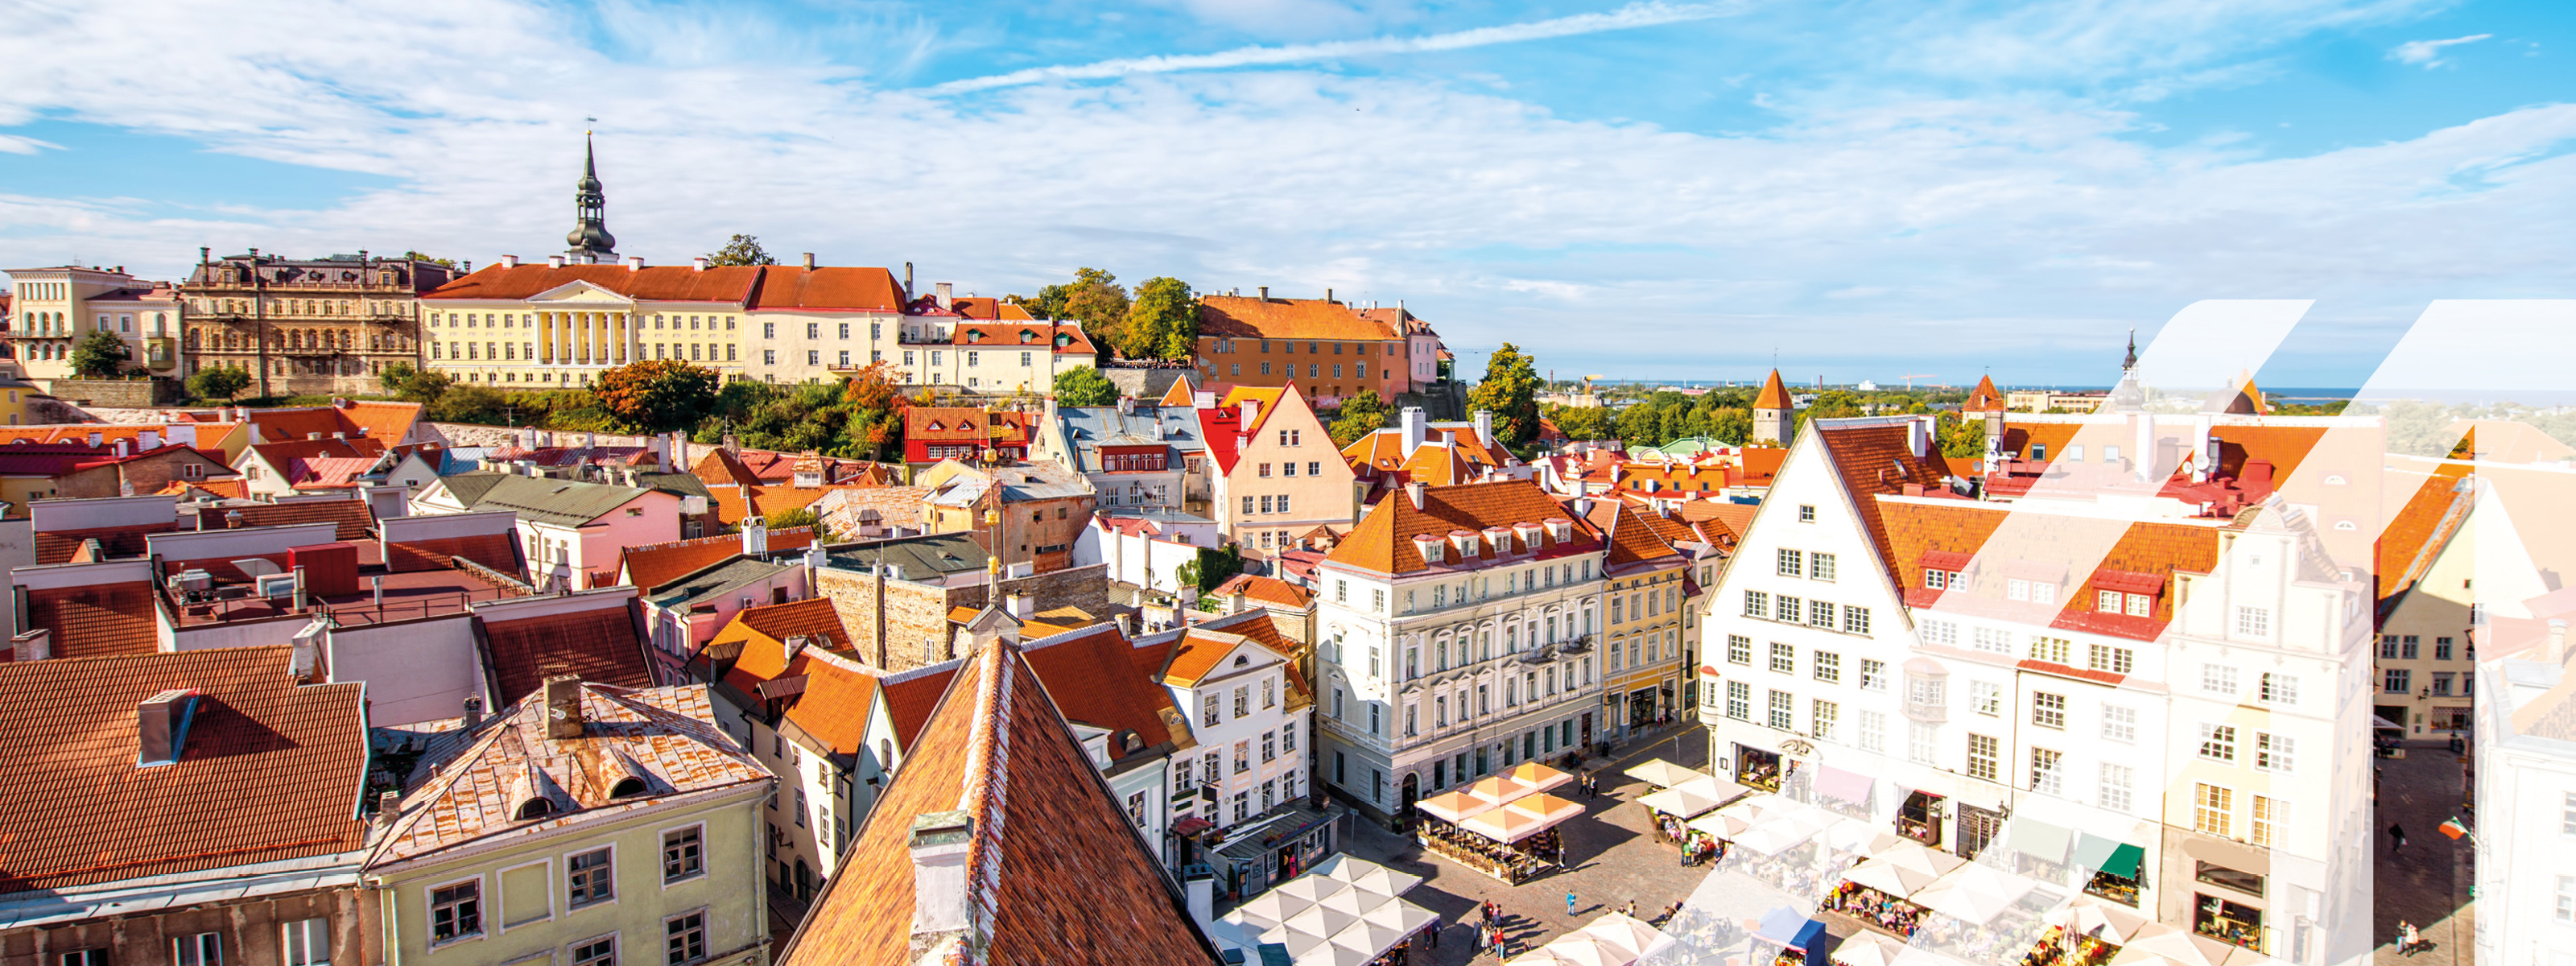 Luftaufnahme der Altstadt mit dem zentralen Platz in Tallin, Estland. Weiße Häuser mit roten Dächern unter blauem Himmel und einigen Wolken. Über das Bild wurde ein weißes Austria A gelegt.